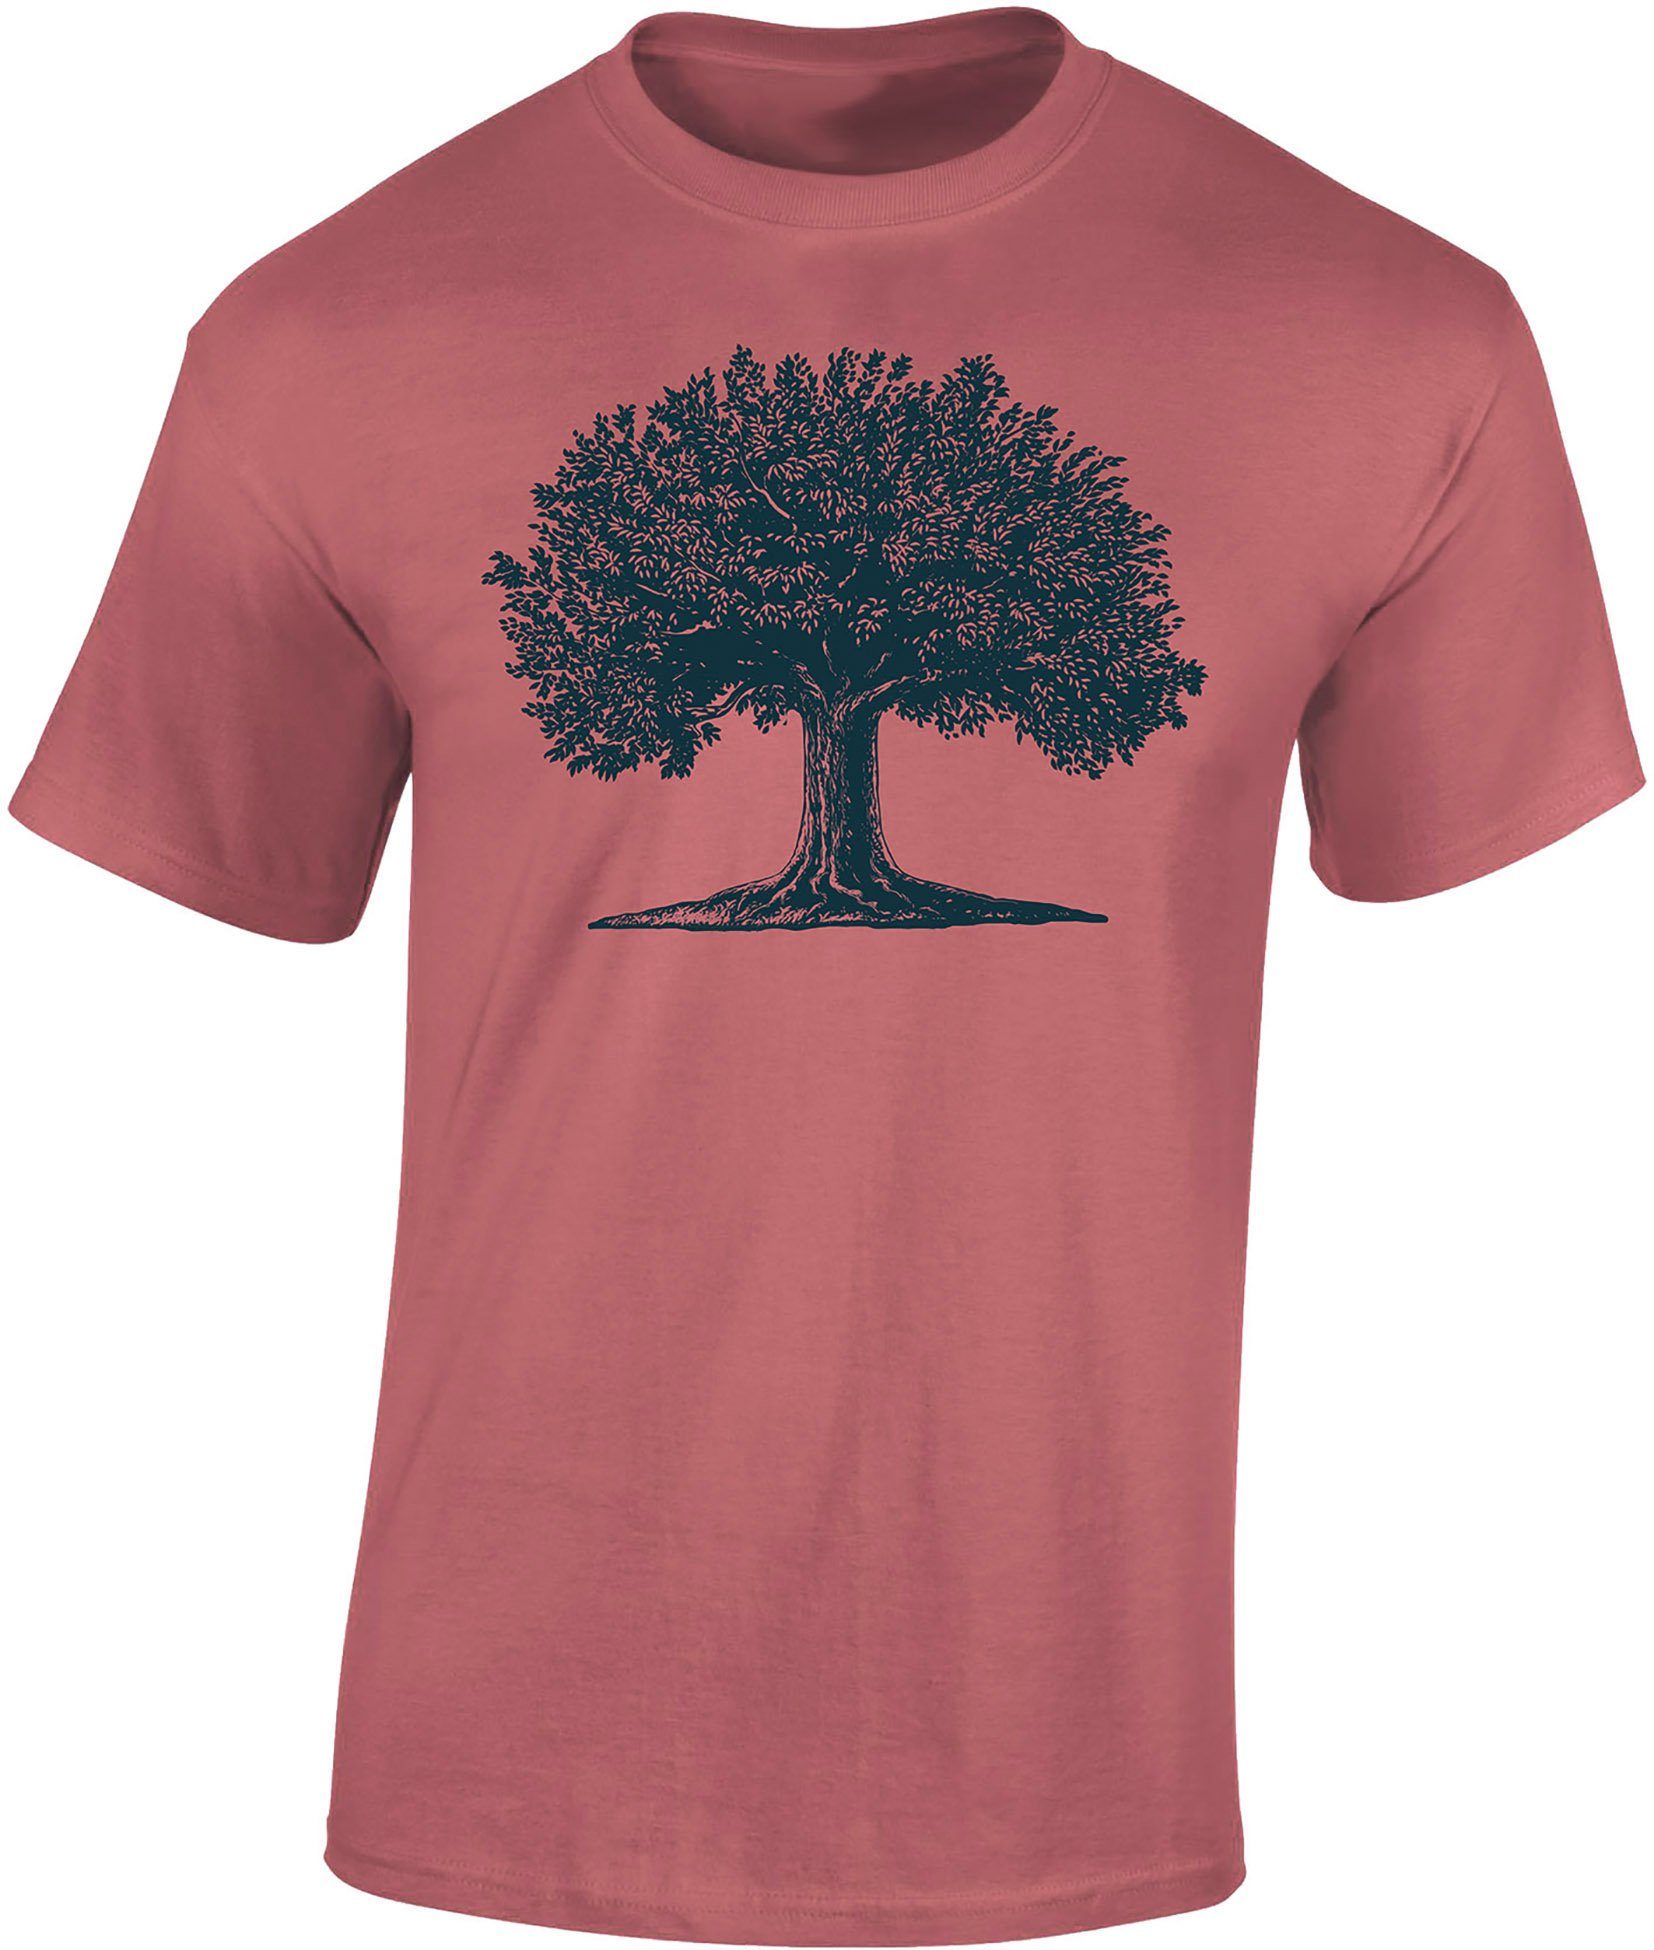 Baddery Print-Shirt Garten T-Shirt : Arbor Magna - Wald - Nature Hobbygärtner Gärtner, hochwertiger Siebdruck, auch Übergrößen, aus Baumwolle